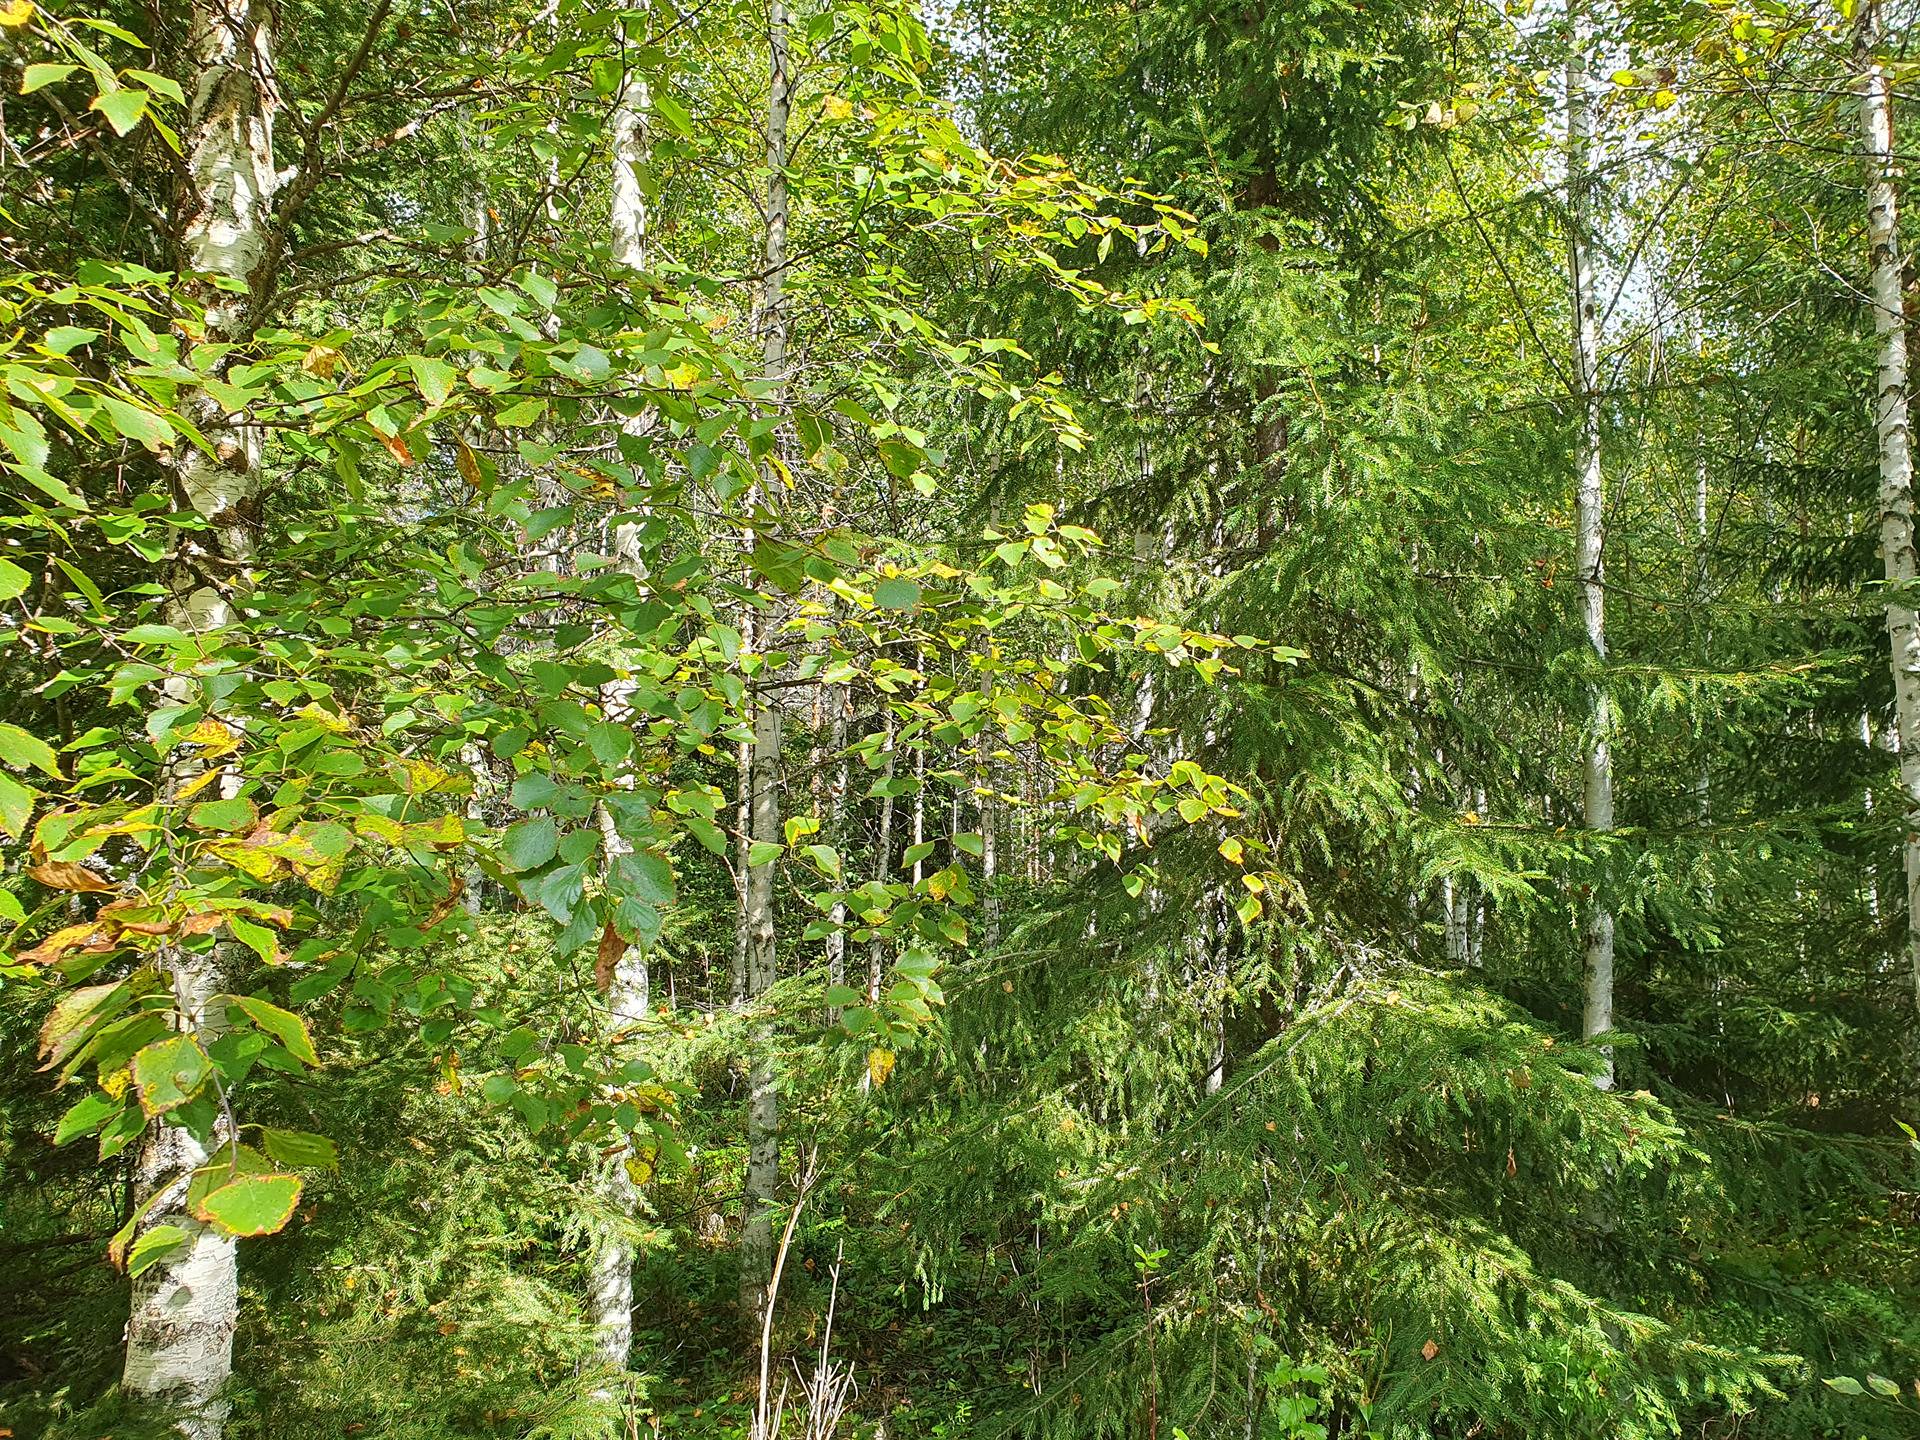 VIENOLA 785-401-5-103 30,09 ha metsäkiinteistö Jaalangan Itärannan tievarrella n. 20 km Vaalan taajamasta. 14